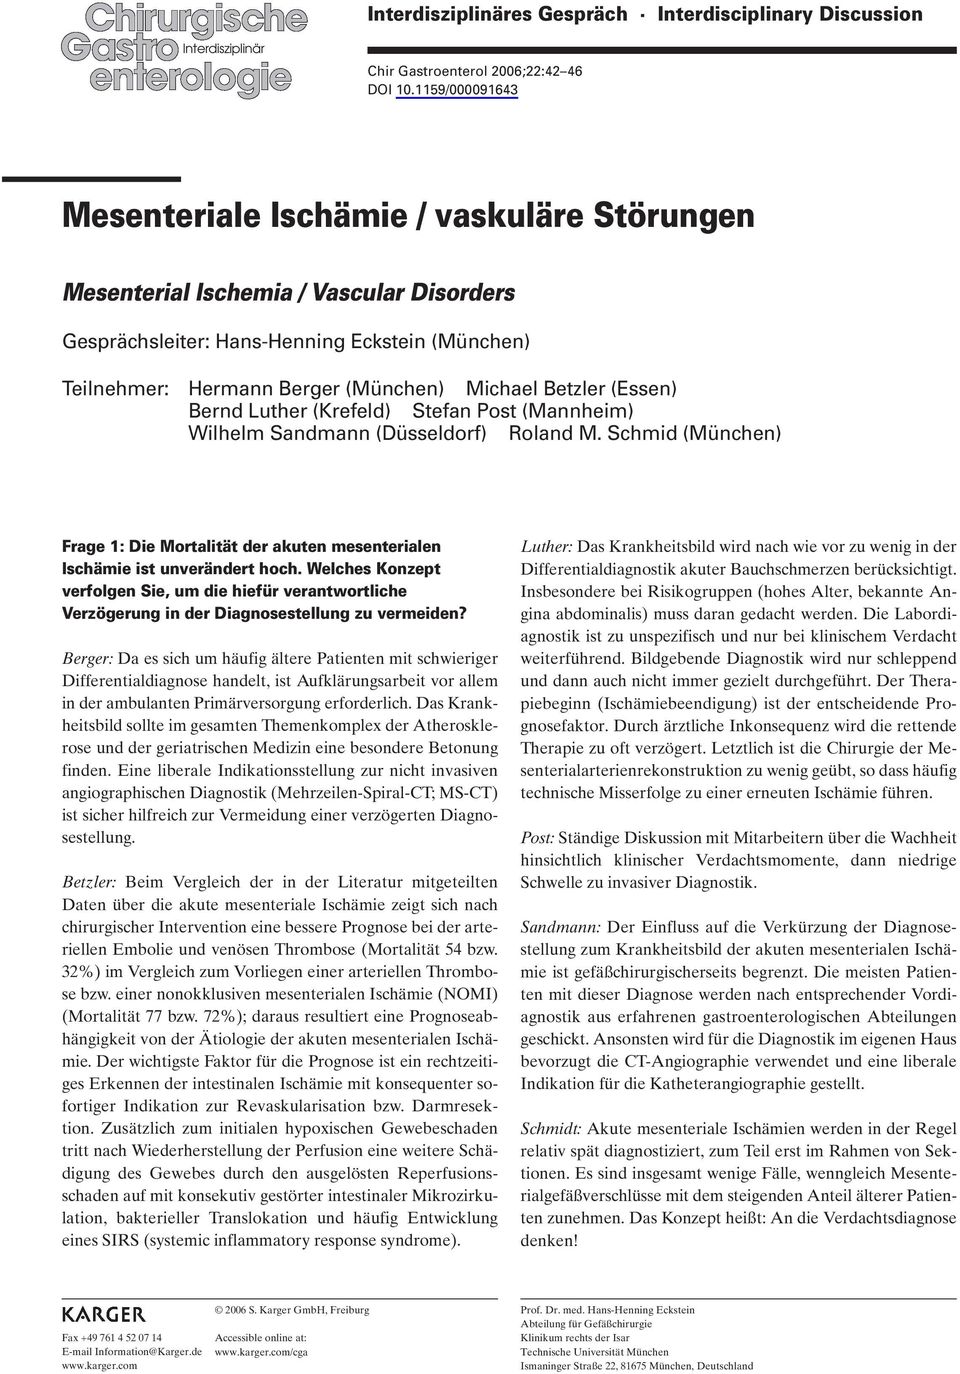 Betzler (Essen) Bernd Luther (Krefeld) Stefan Post (Mannheim) Wilhelm Sandmann (Düsseldorf) Roland M. Schmid (München) Frage 1: Die Mortalität der akuten mesenterialen Ischämie ist unverändert hoch.